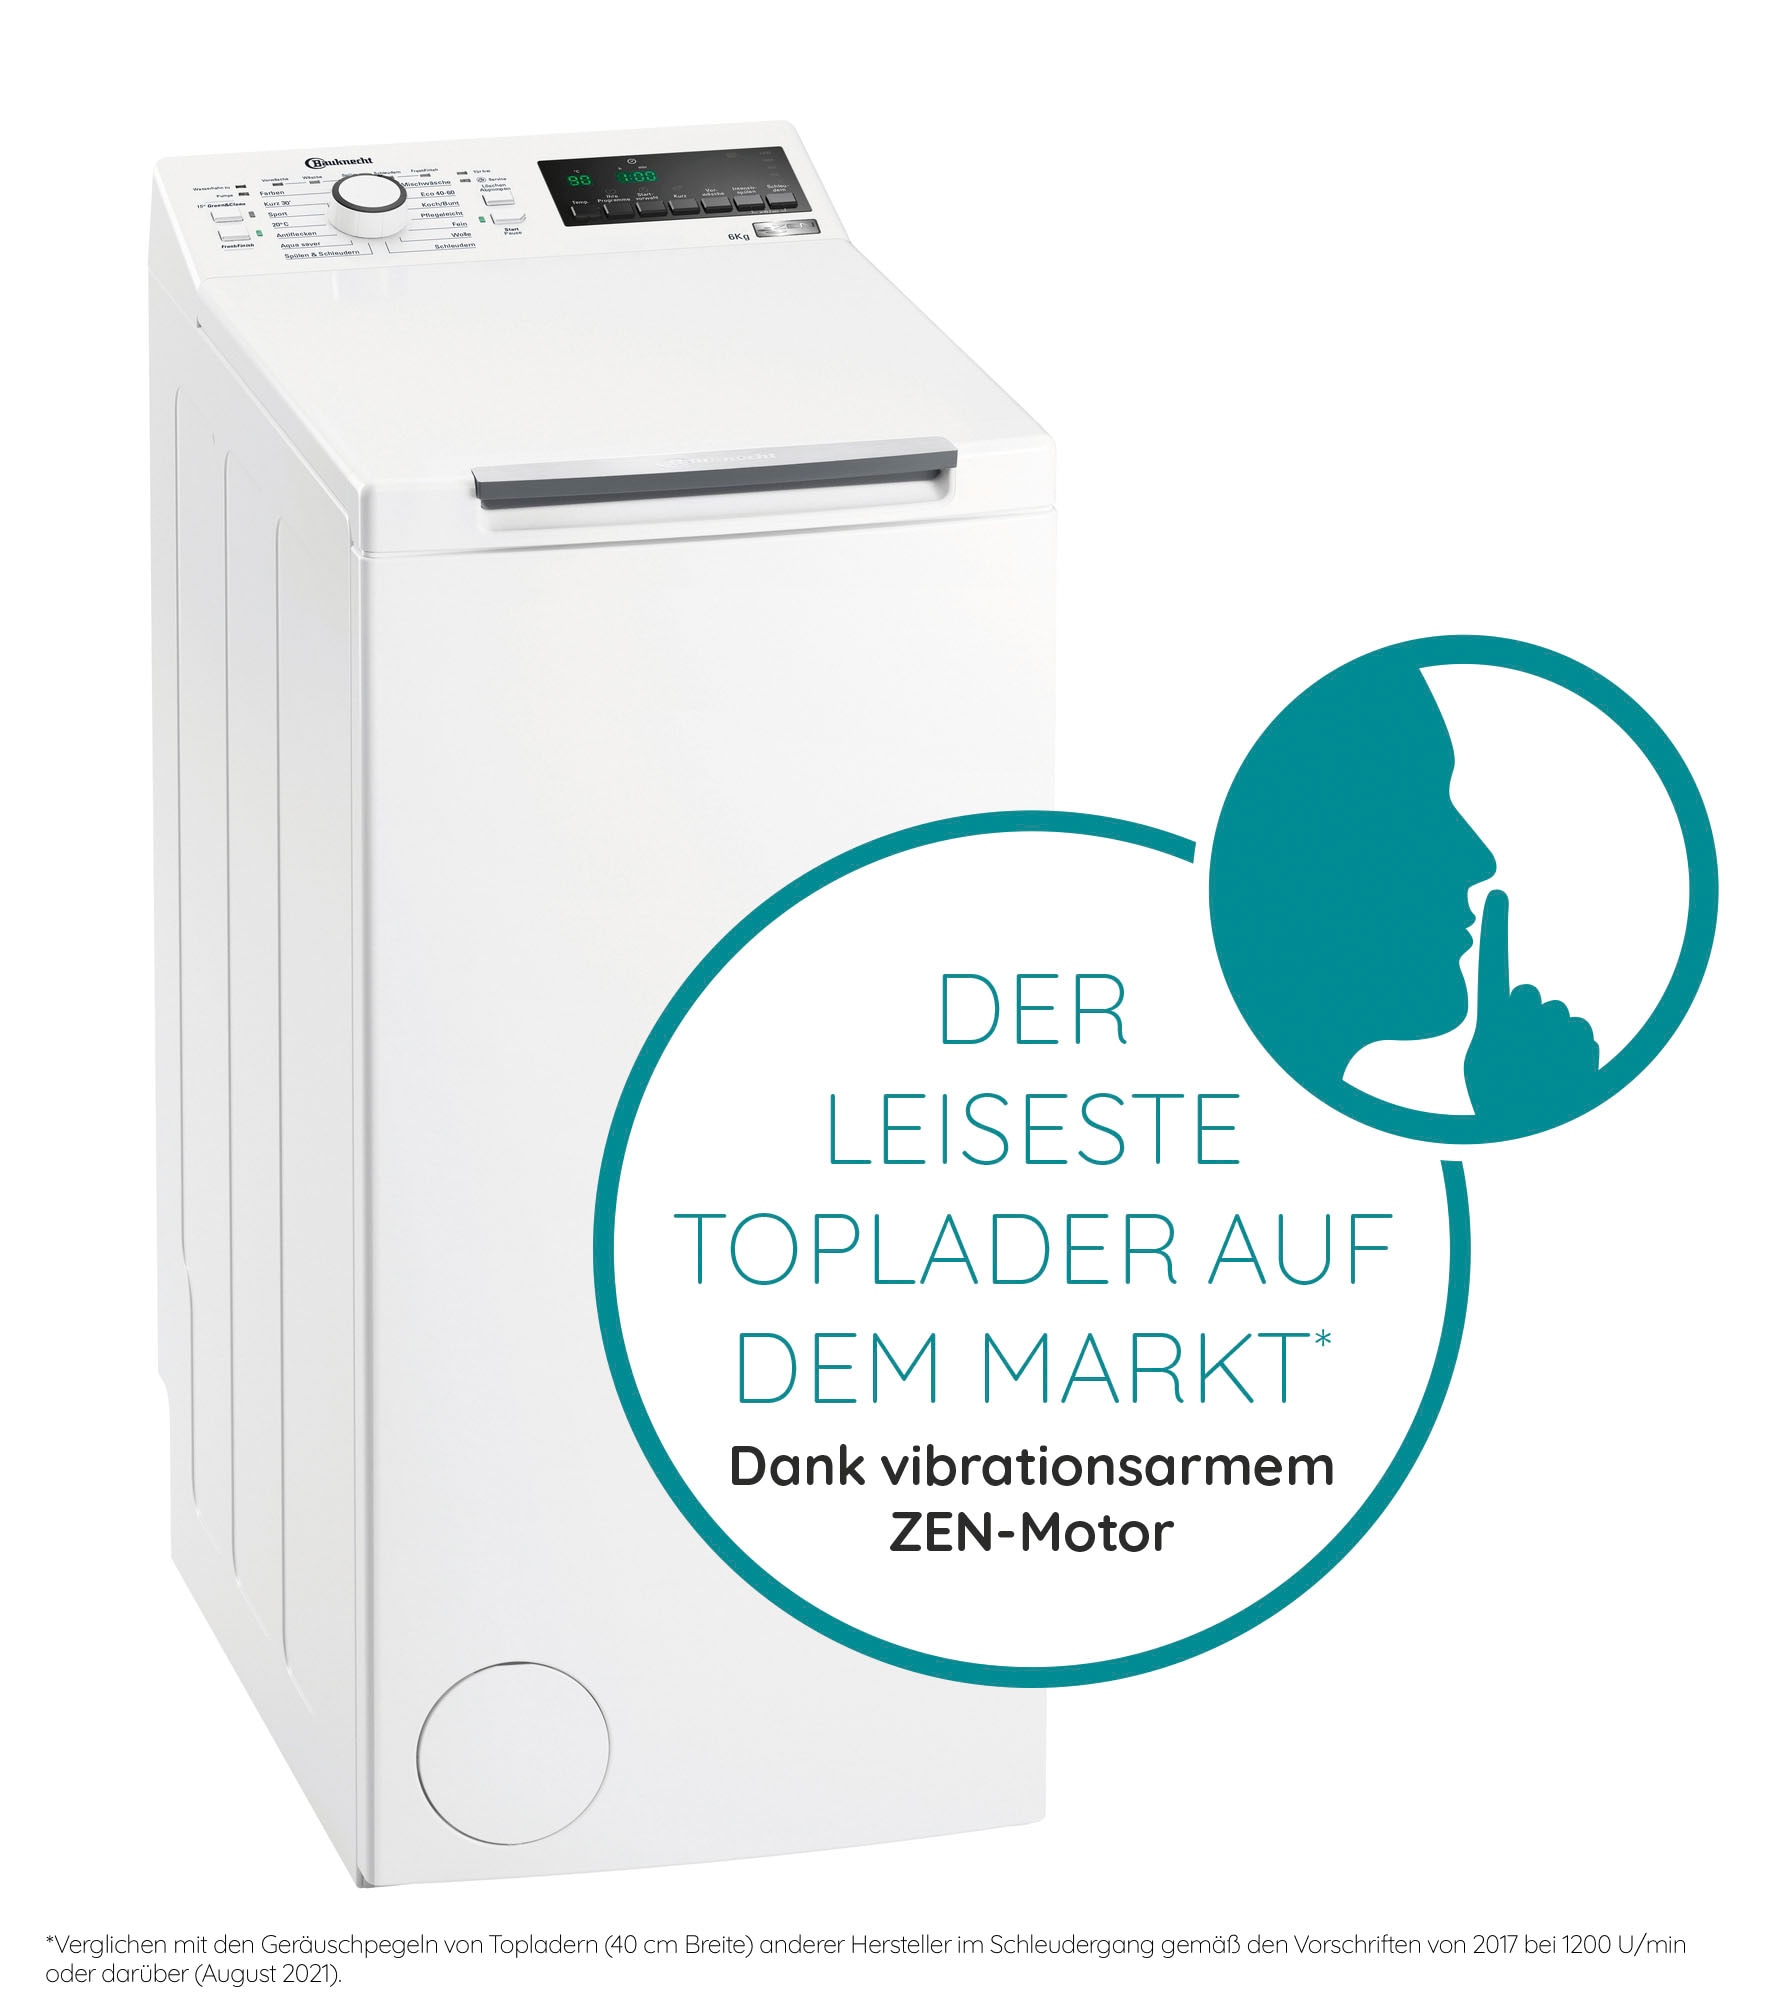 Toplader, U/min Pro kg, 6ZB, WMT 6 bestellen Eco Waschmaschine BAUKNECHT 1200 online